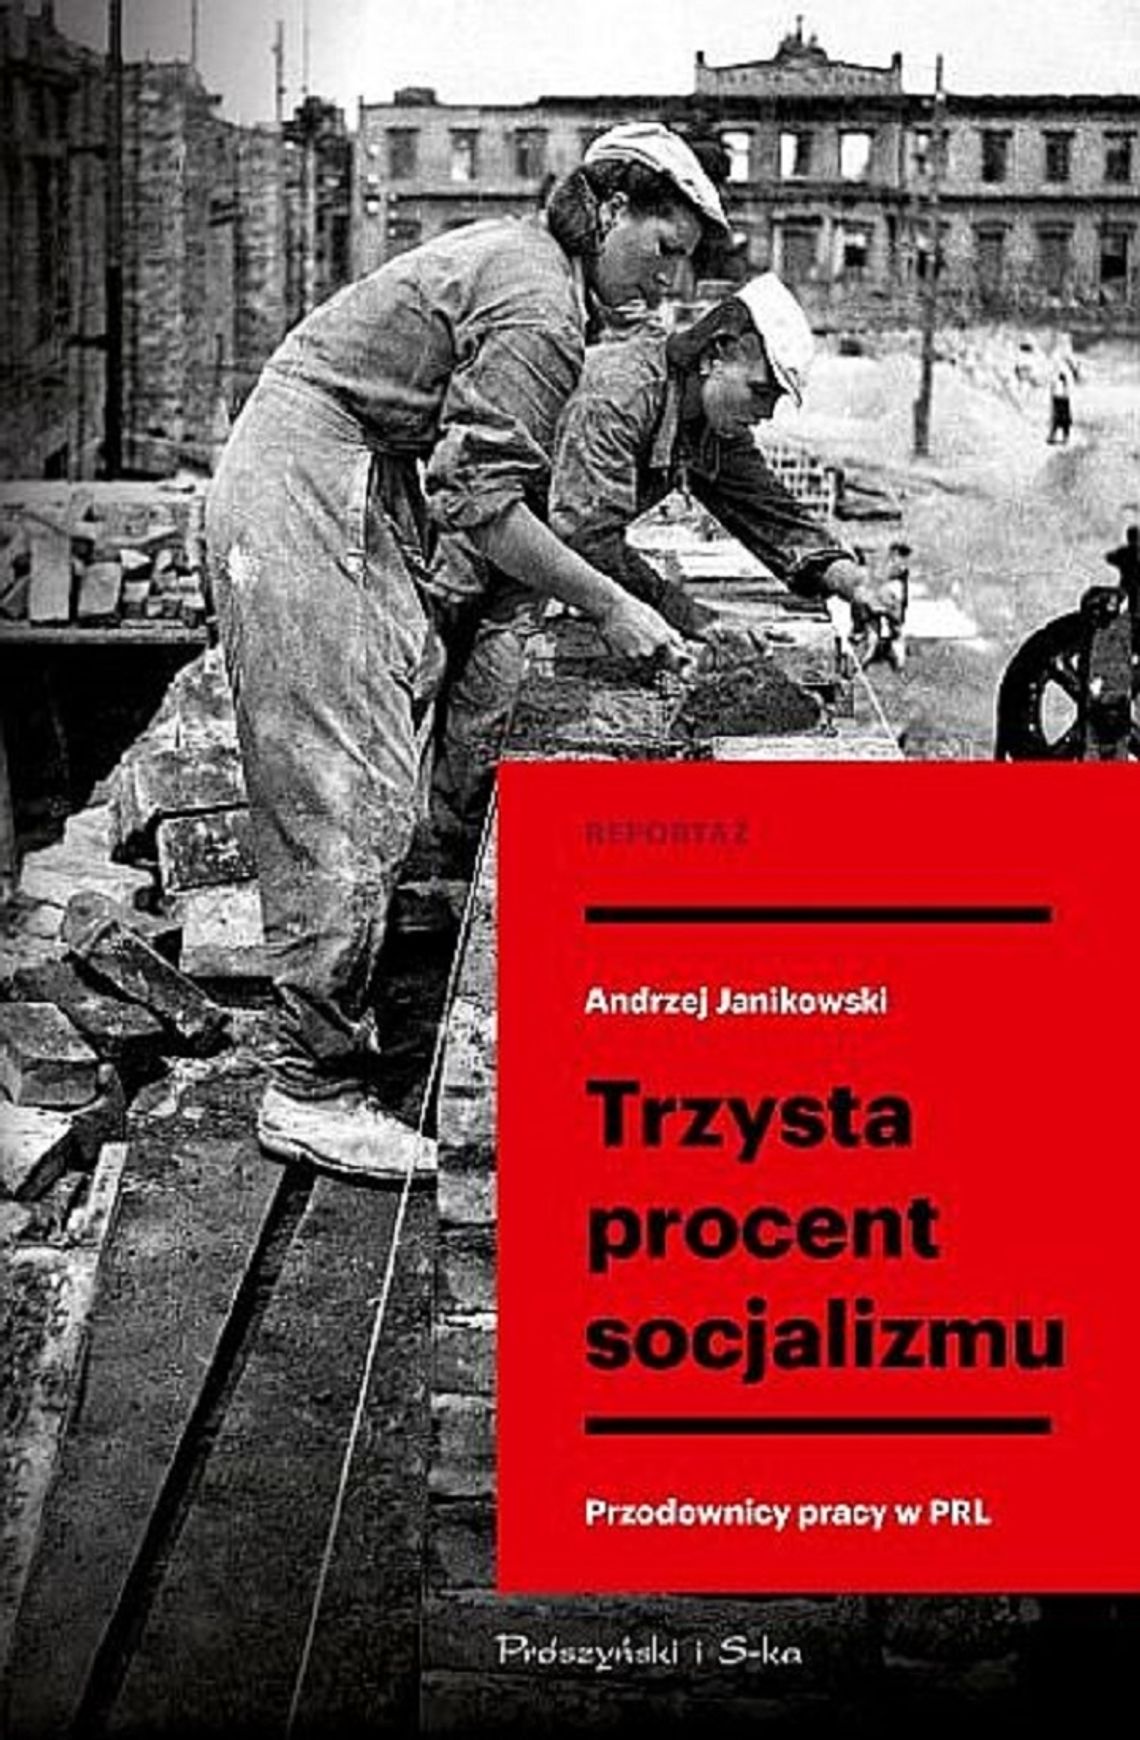 Andrzej Janikowski - Trzysta procent socjalizmu - Wyd. Prószyński i S-ka